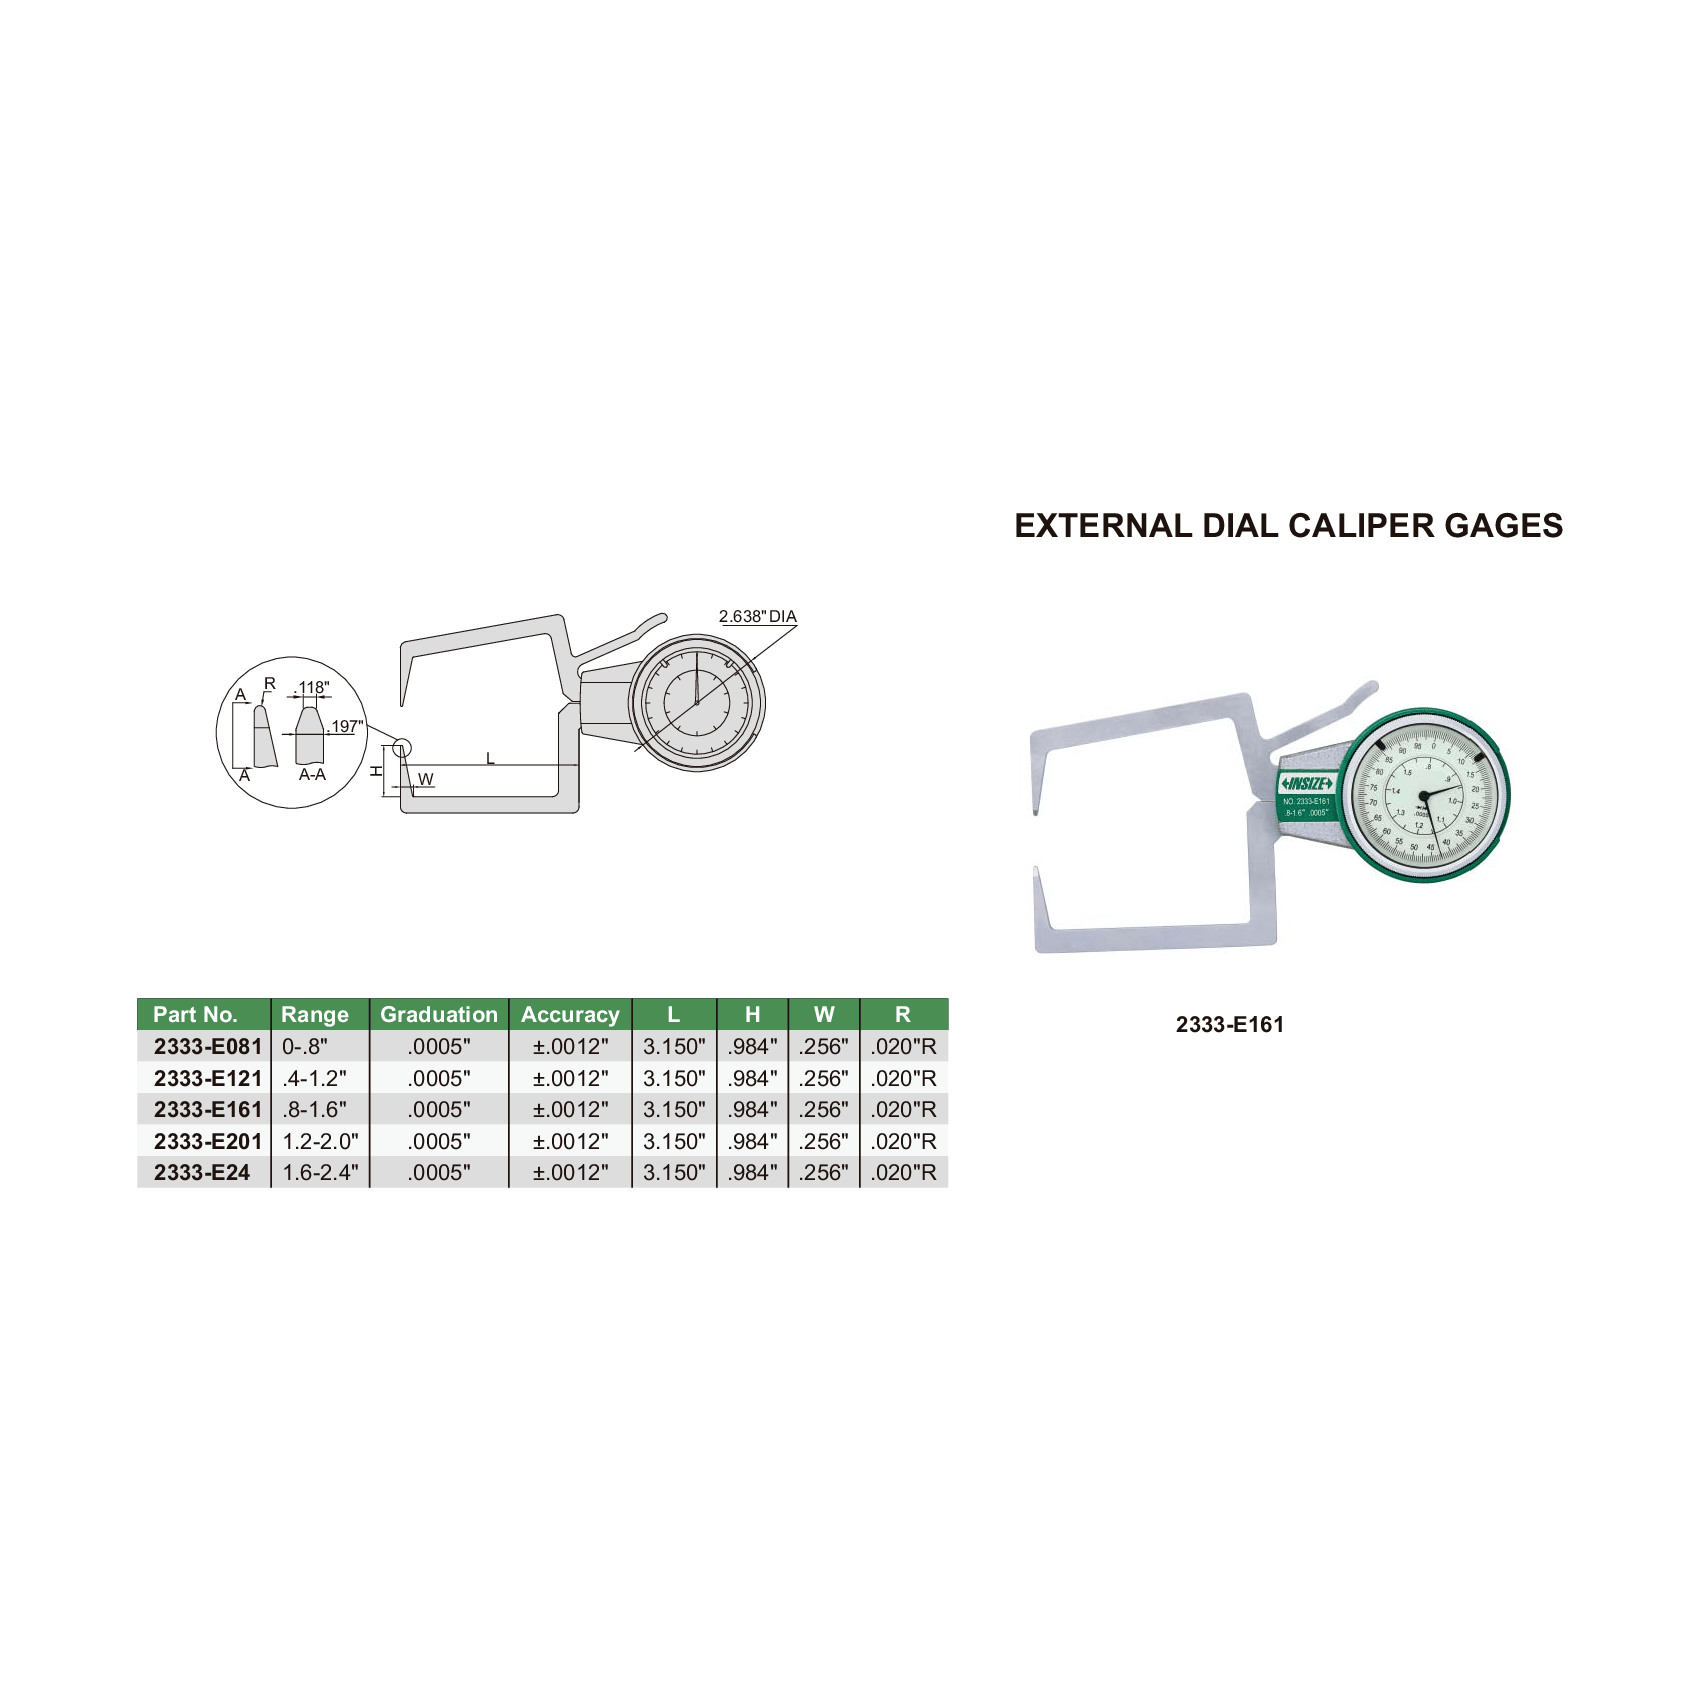 Insize External Dial Caliper Gauge 0.4-1.2" Range Series 2333-E121